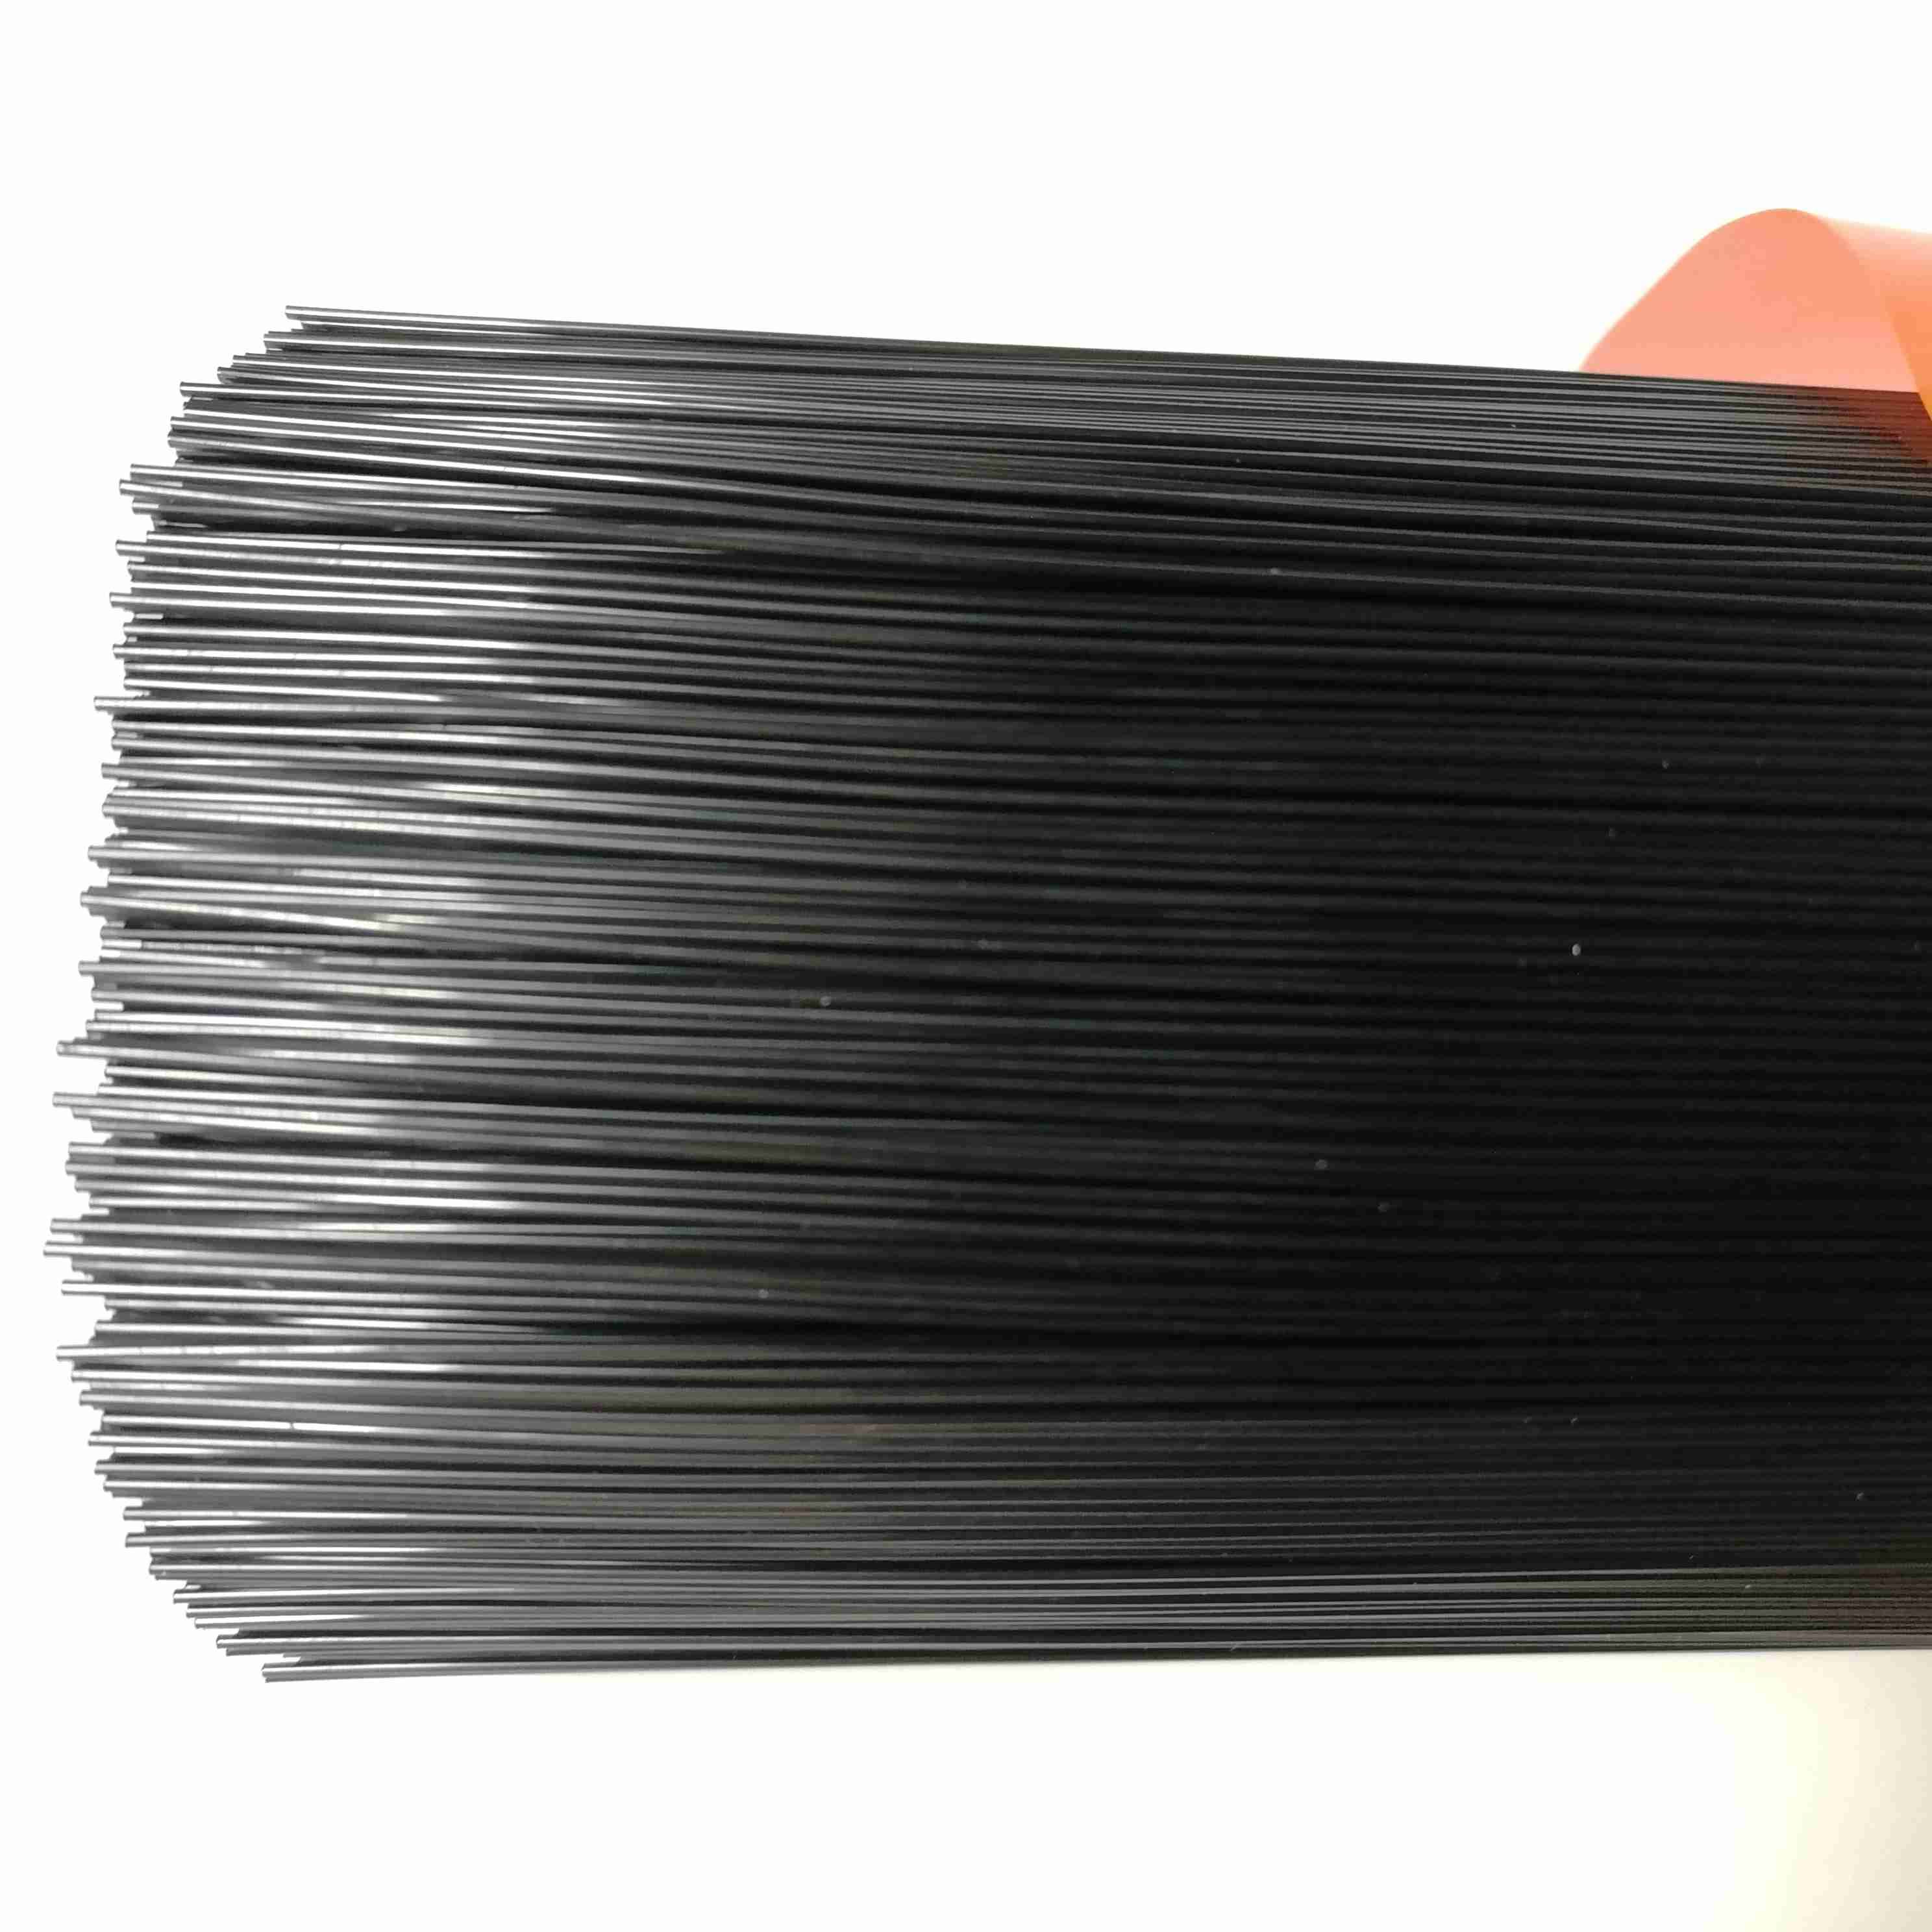 Fotory supply  PA6 brush filament